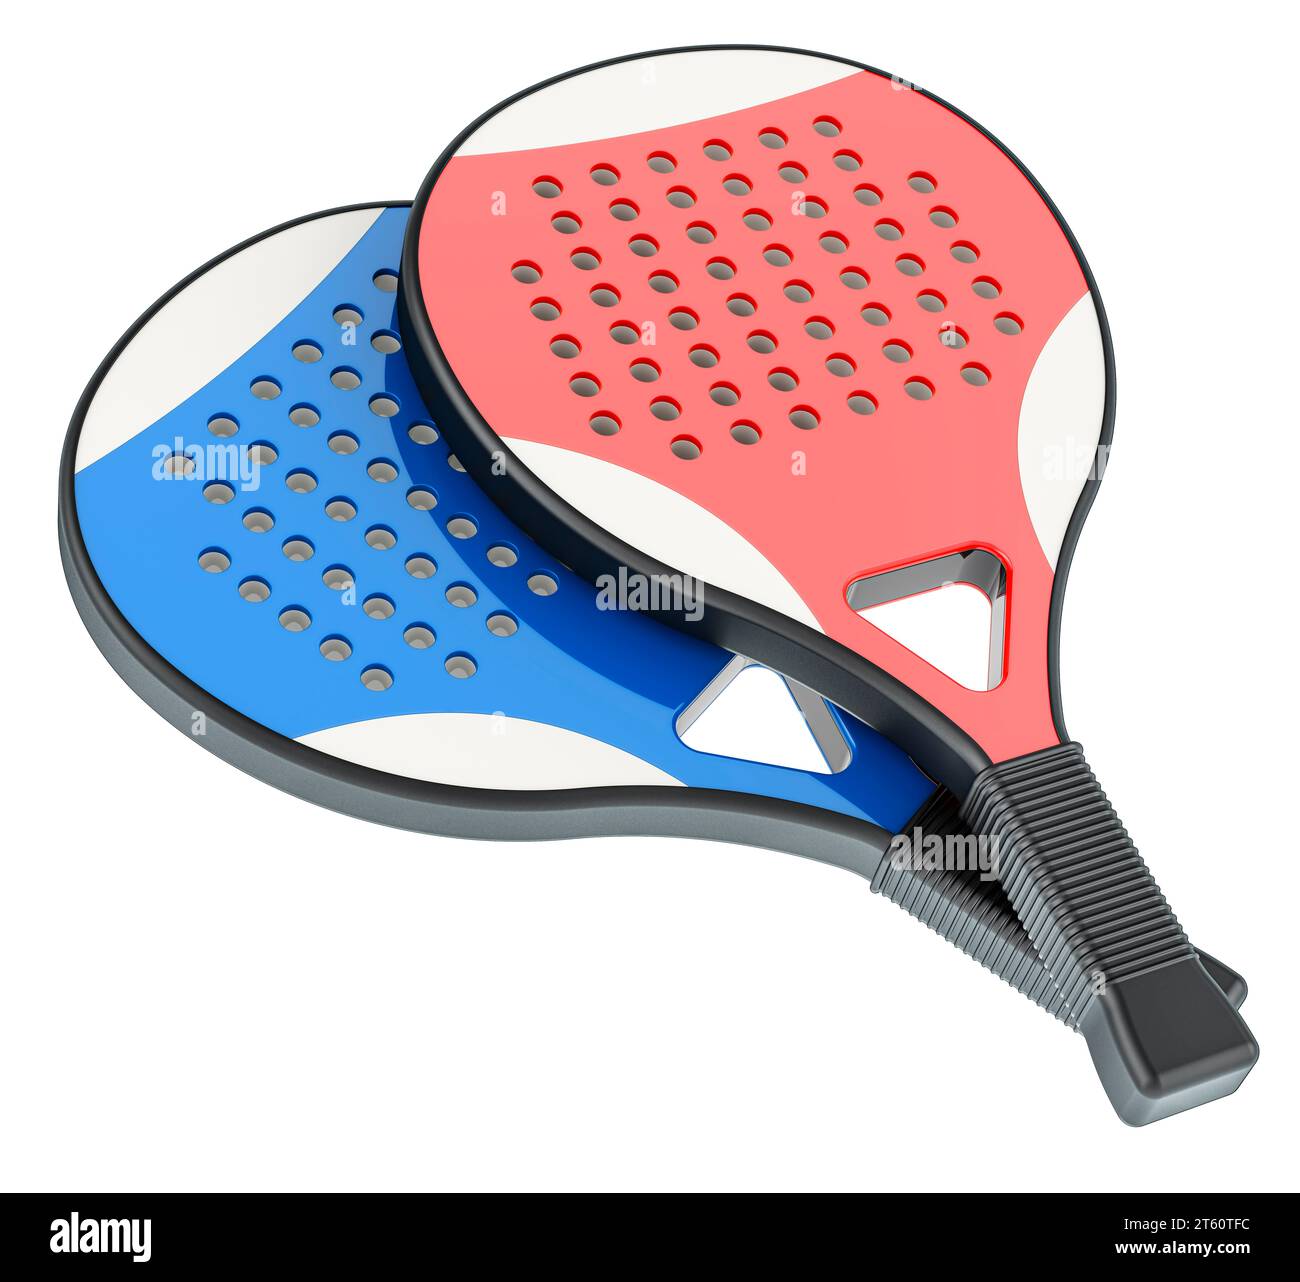 Raquettes de paddle tennis, rendu 3D isolé sur fond blanc Banque D'Images